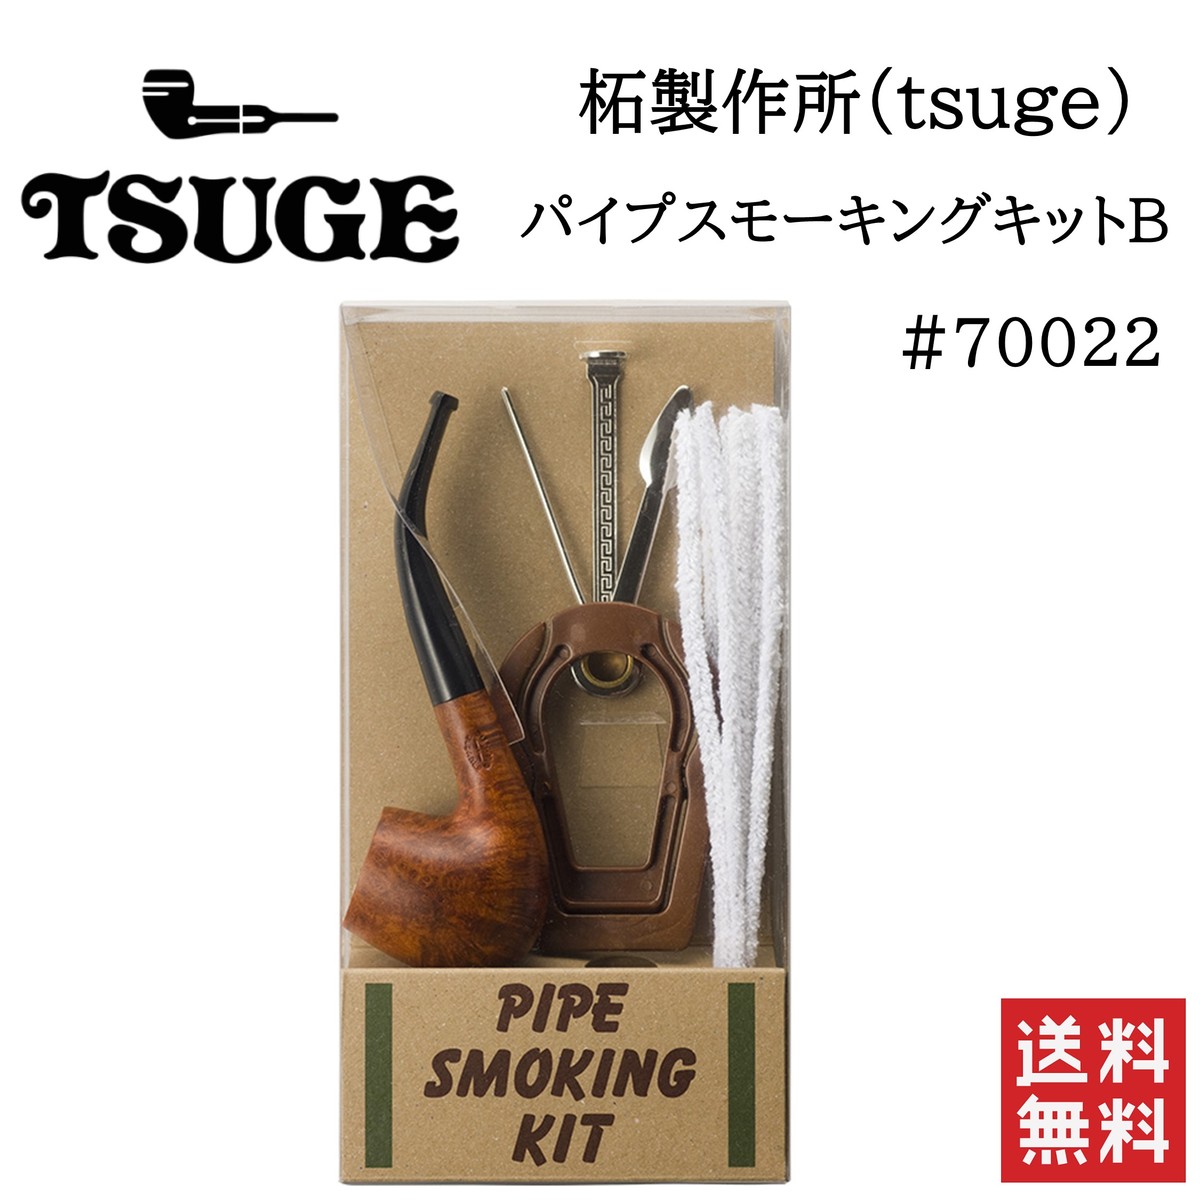 新作販売 スモーキングキット B 柘製作所 倉 tsuge #70022 キセル パイプ 煙管 喫煙具